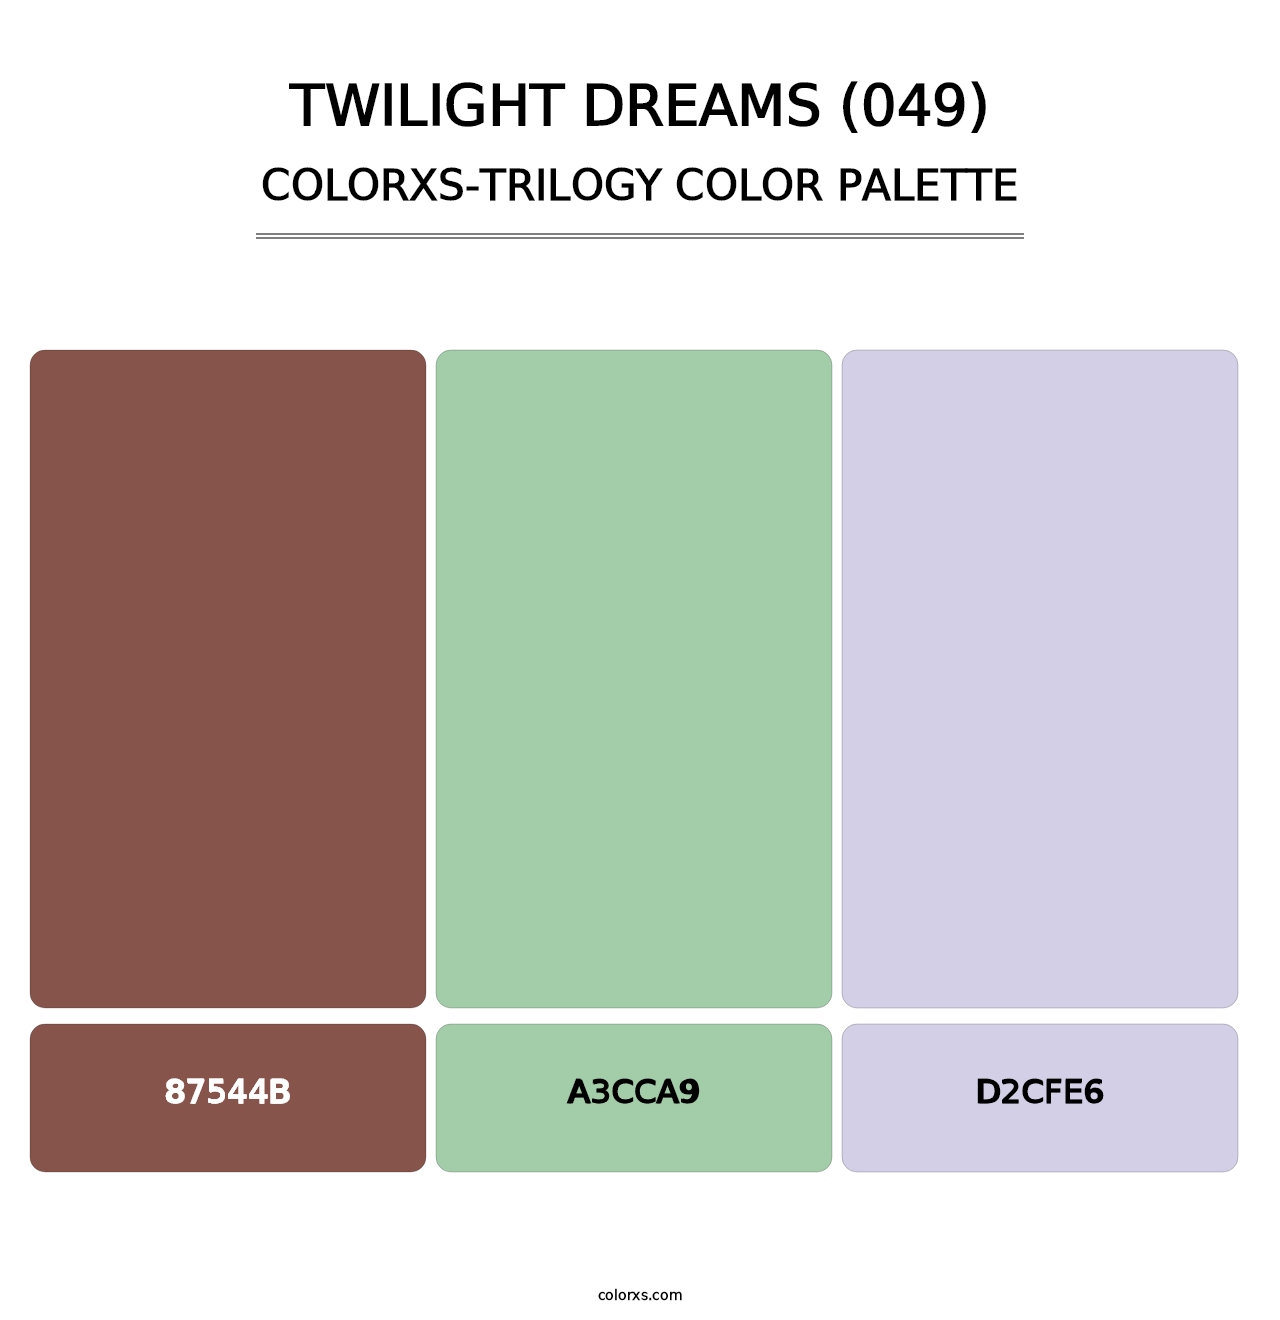 Twilight Dreams (049) - Colorxs Trilogy Palette